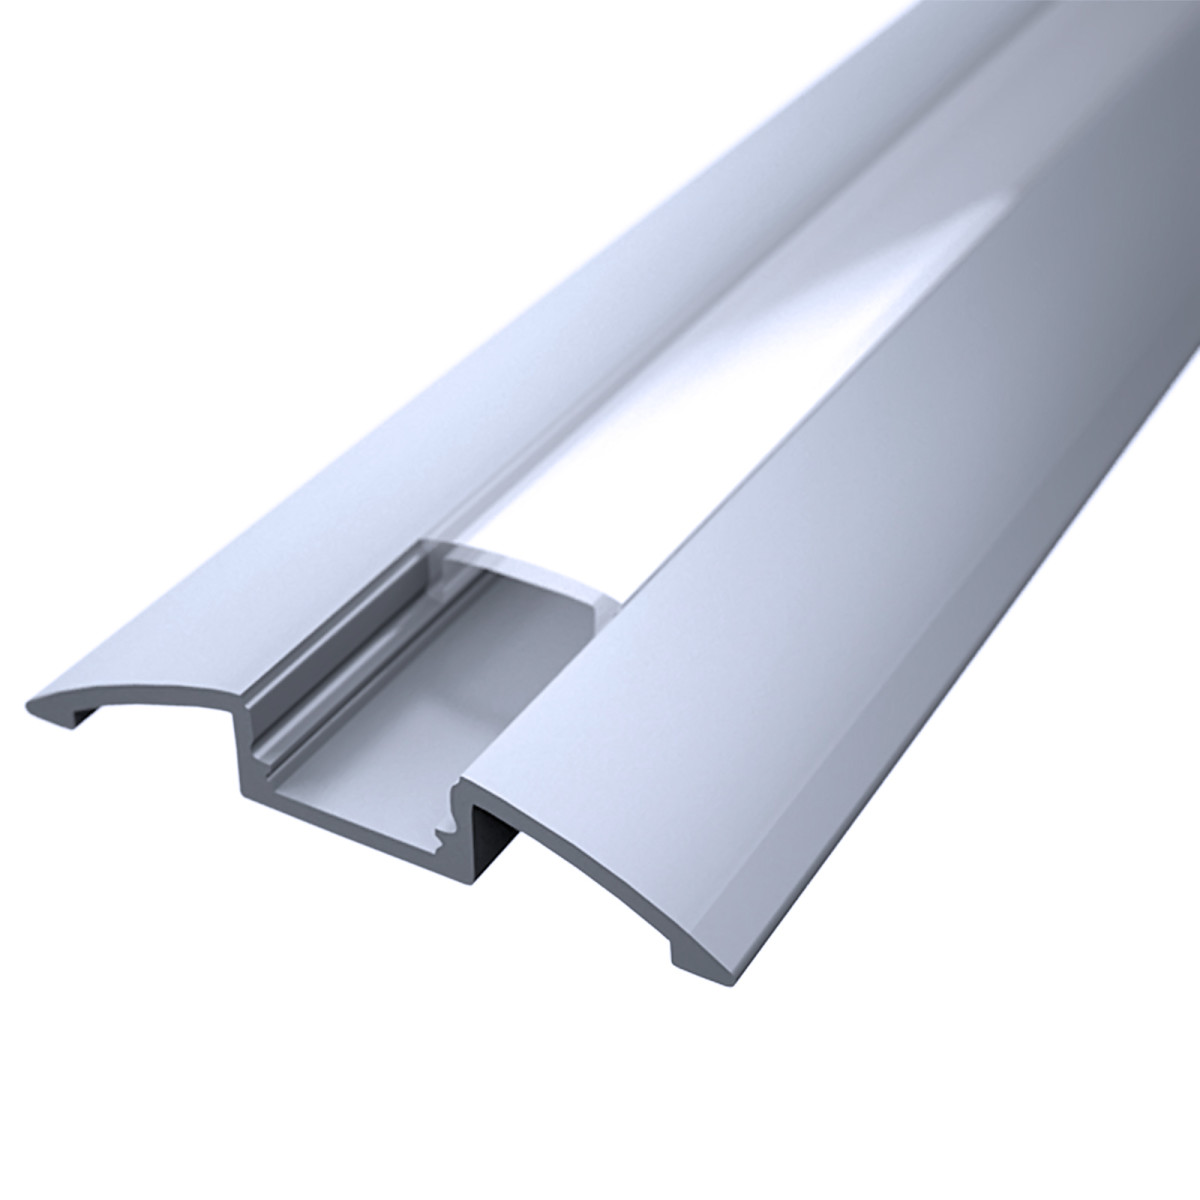 LED Flachprofil "Design-Line" | Abdeckung diffus | Zuschnitt auf 123cm |